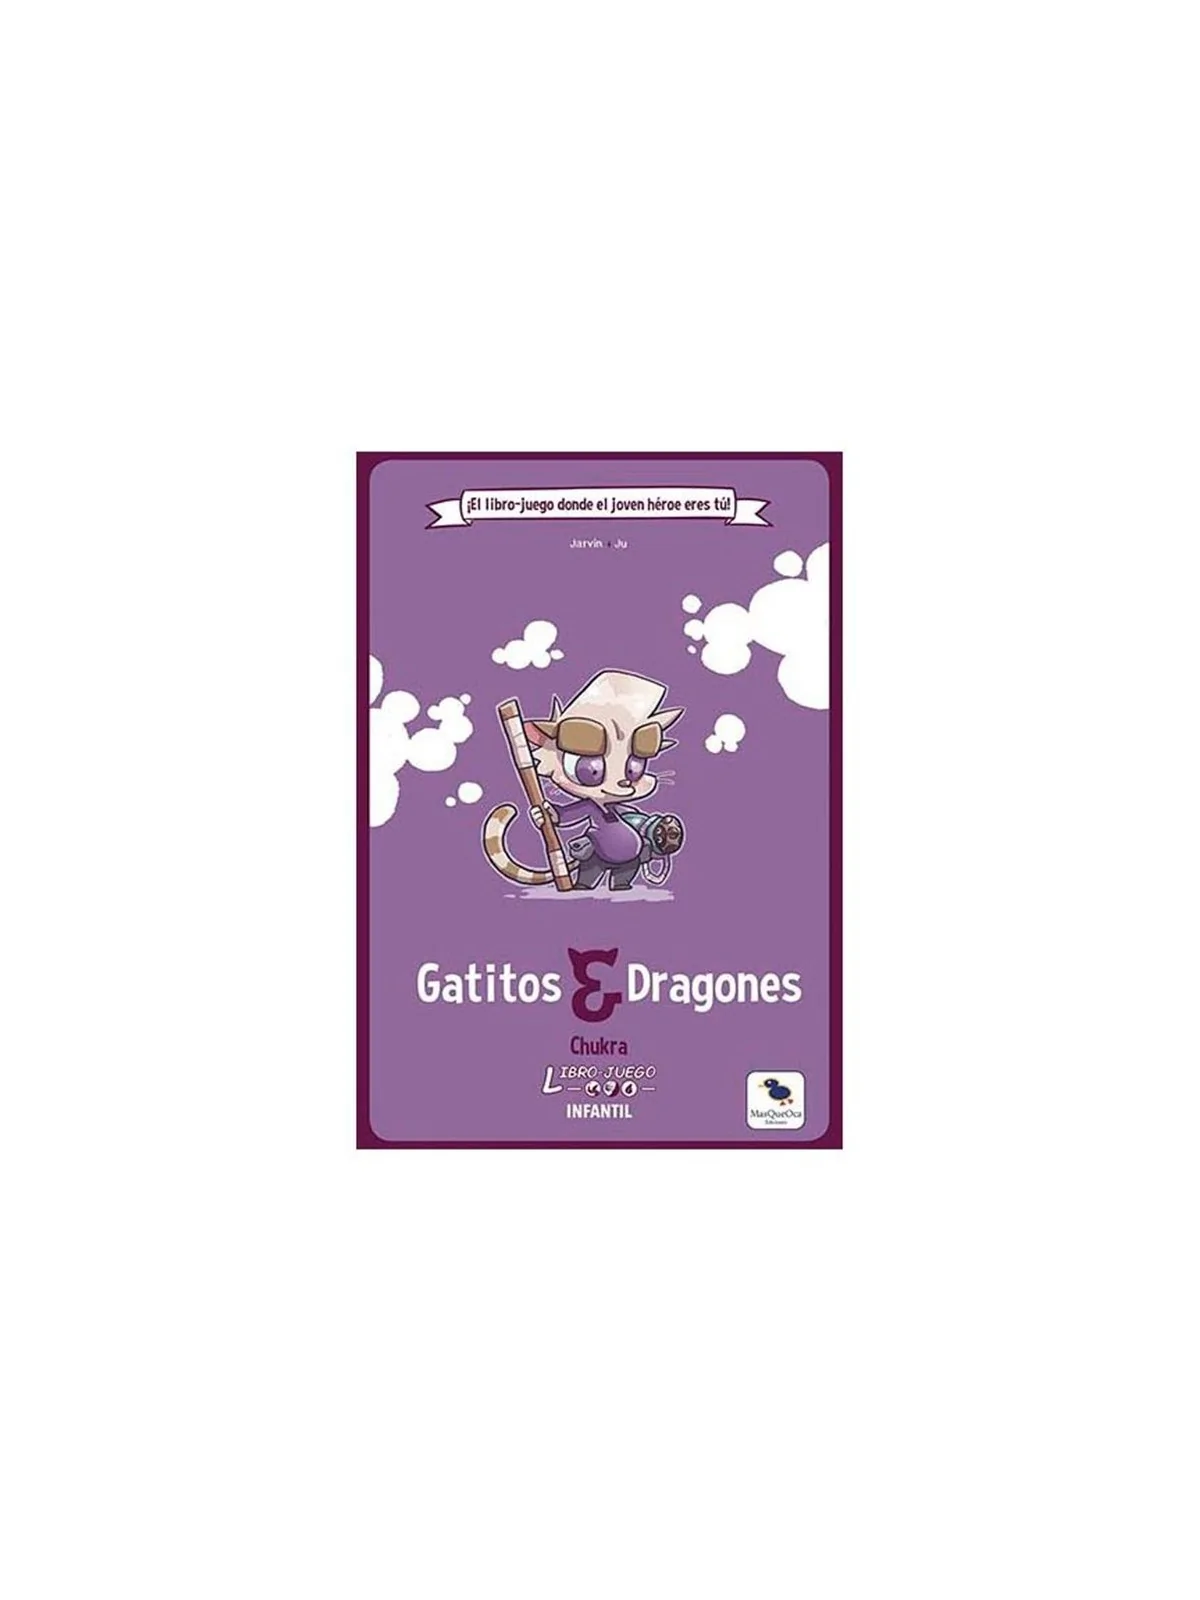 Comprar Libro-Juego: Gatitos y Dragones barato al mejor precio 16,15 €